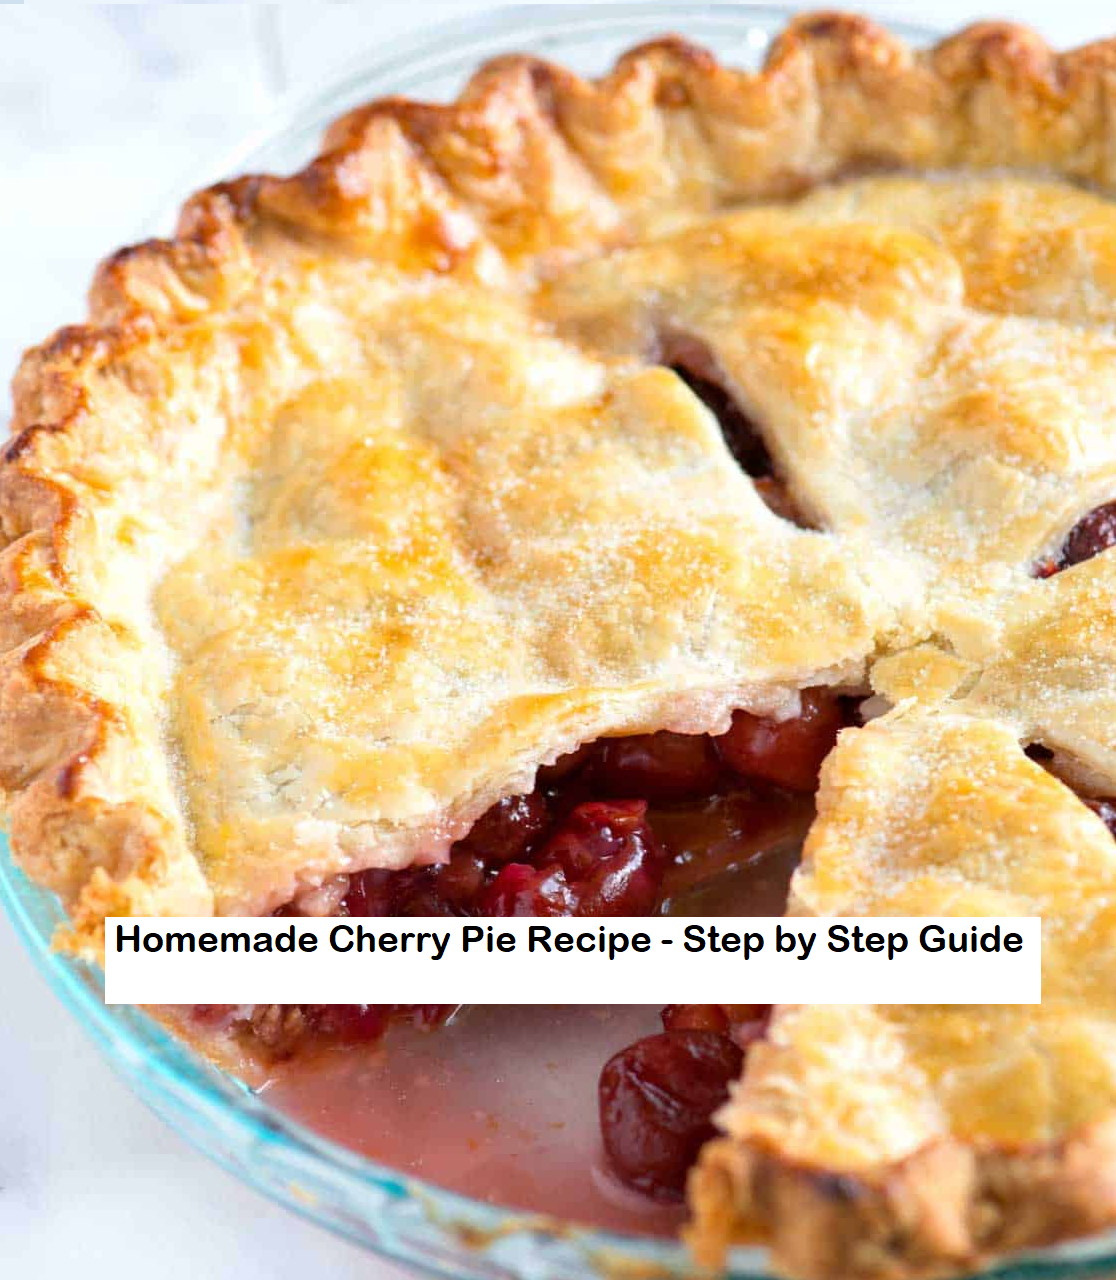 Homemade Cherry Pie Recipe - Step by Step Guide